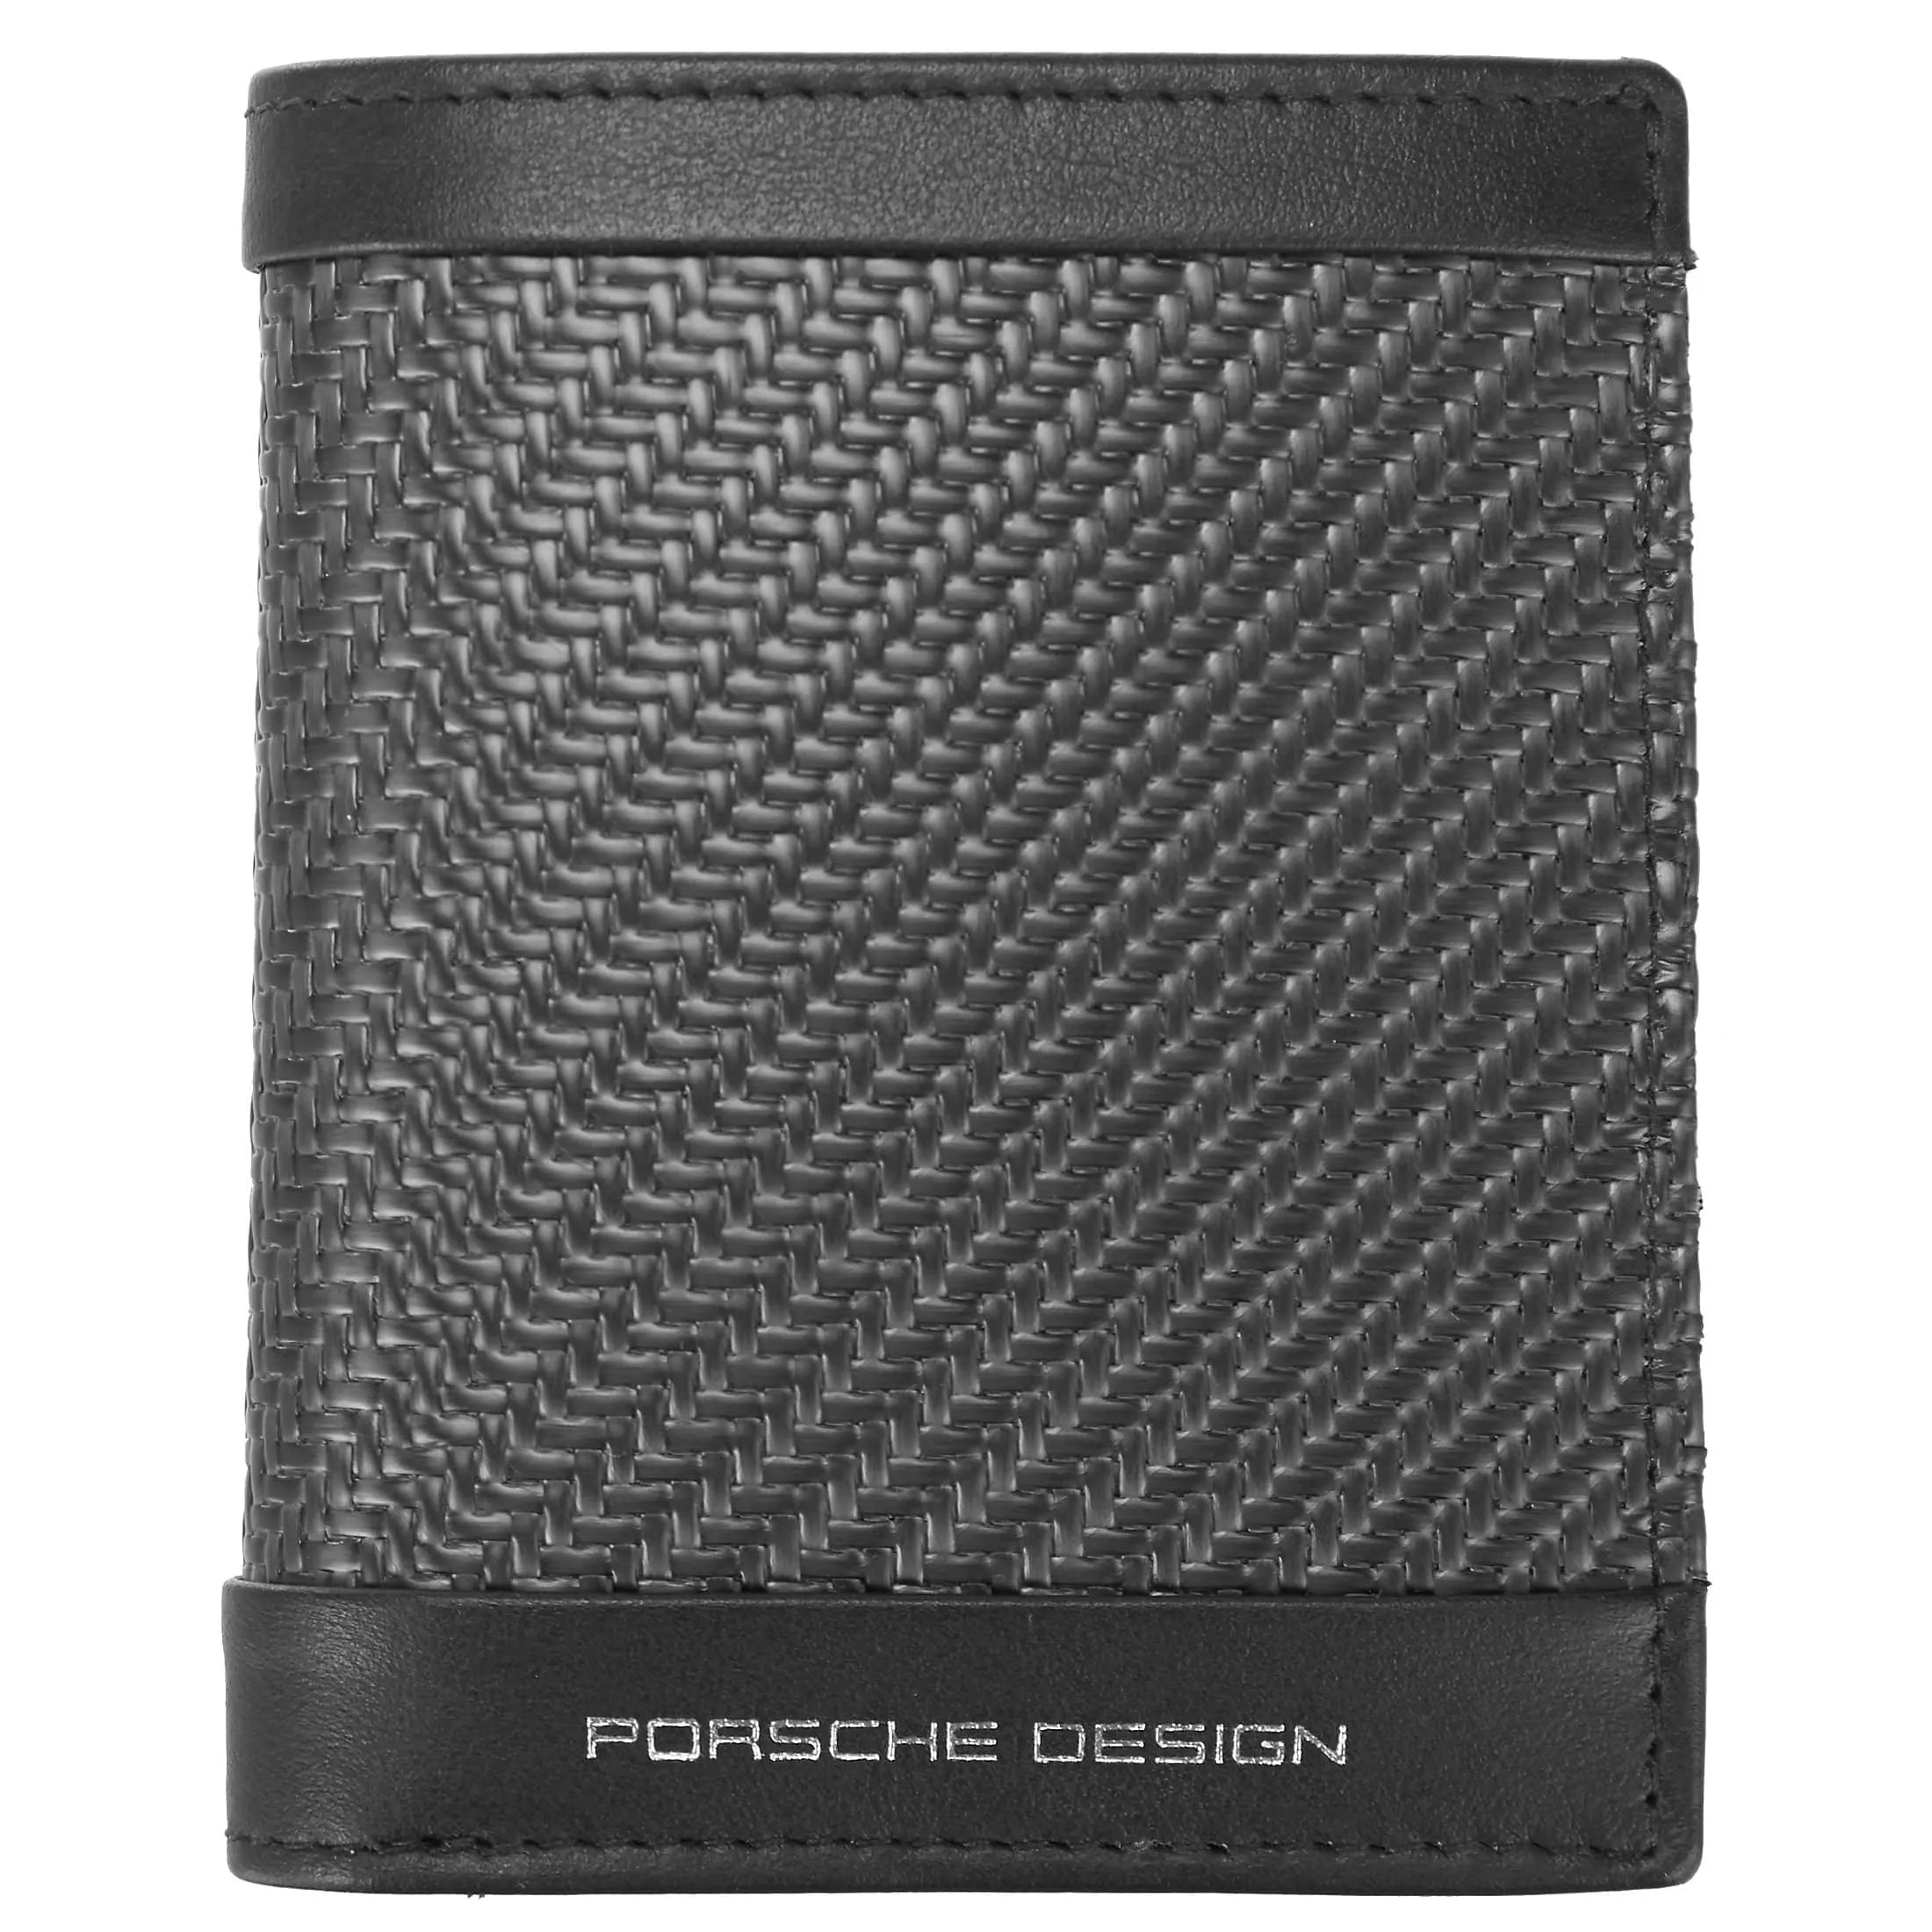 Porsche Design Carbon Billfold 6 RFID 10 cm - Black